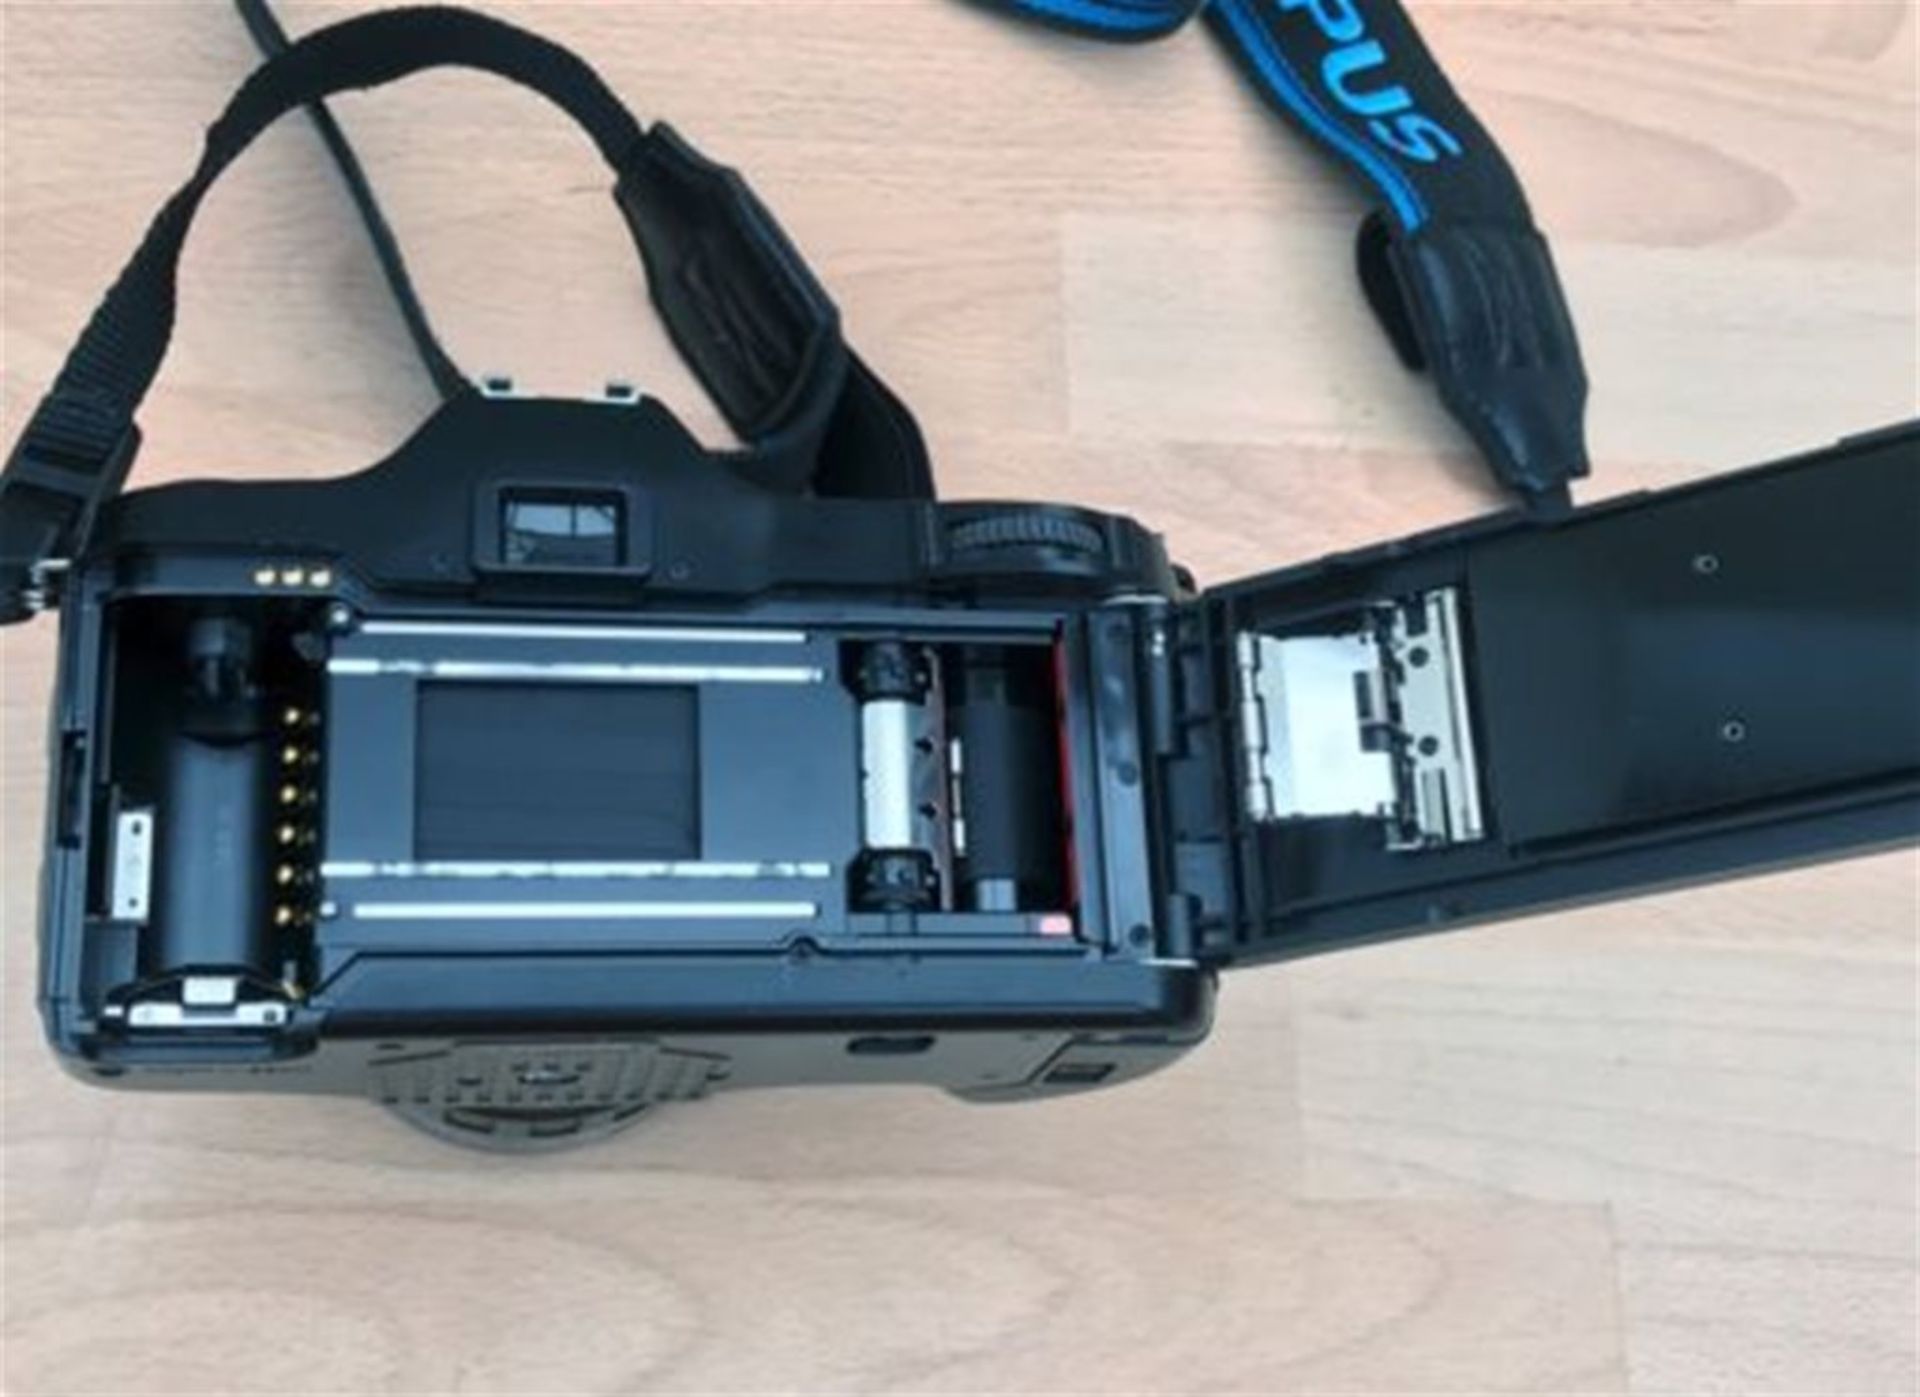 Minolta Dynax 3000i AF SLR Body 45-80mm 1:4 (22) -56 AF Zoom Lens + Accessories - Image 4 of 5